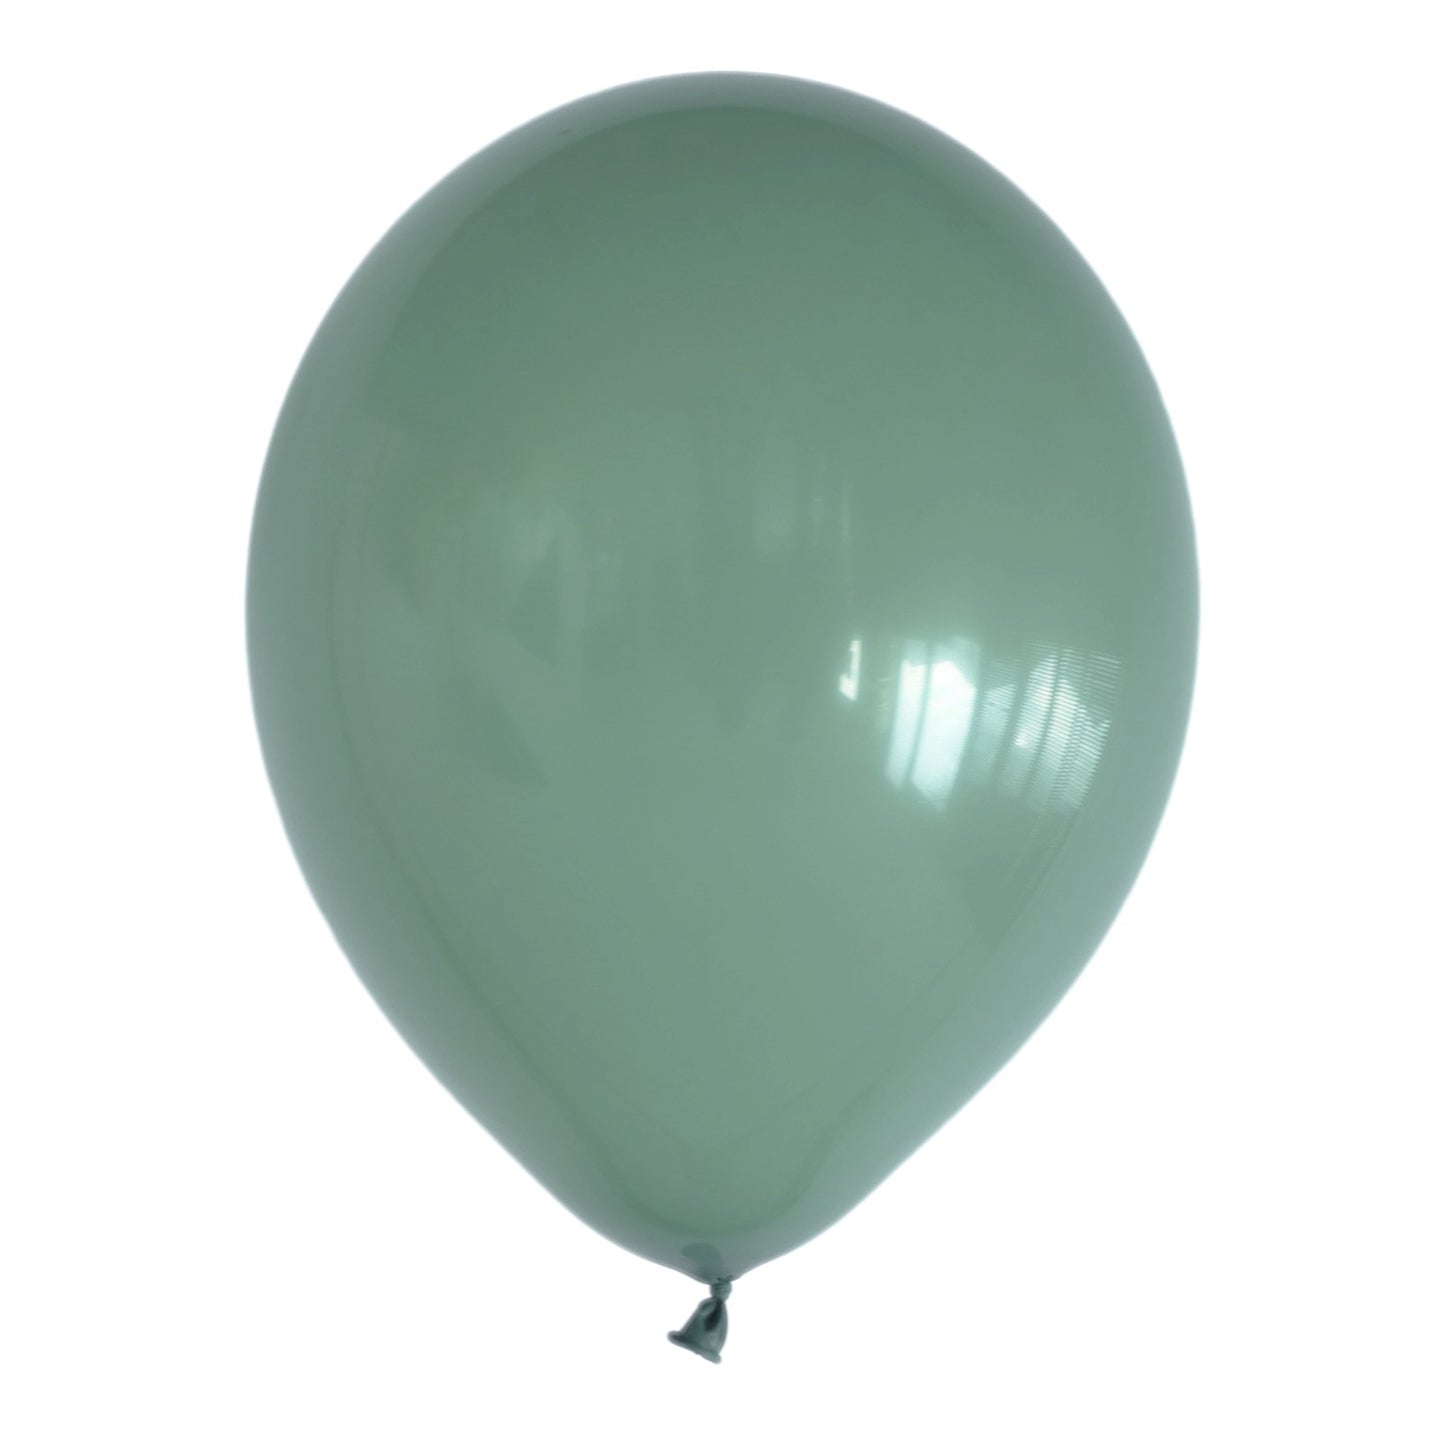 Avocado Green Balloons (10 pcs / 46 CM)